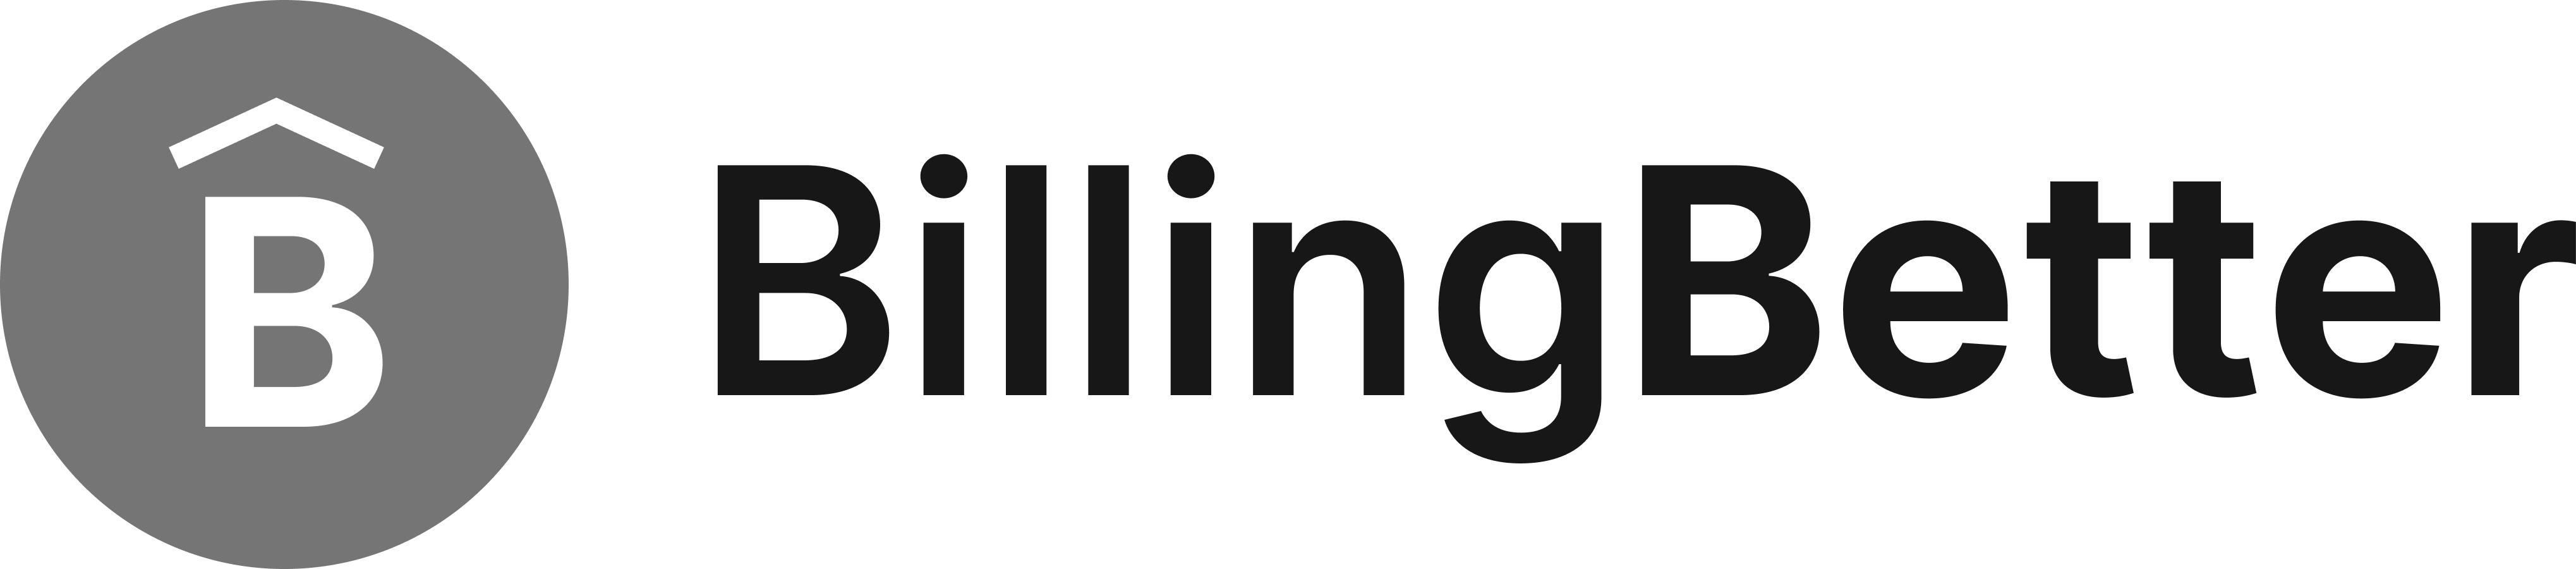 Billing Better logo